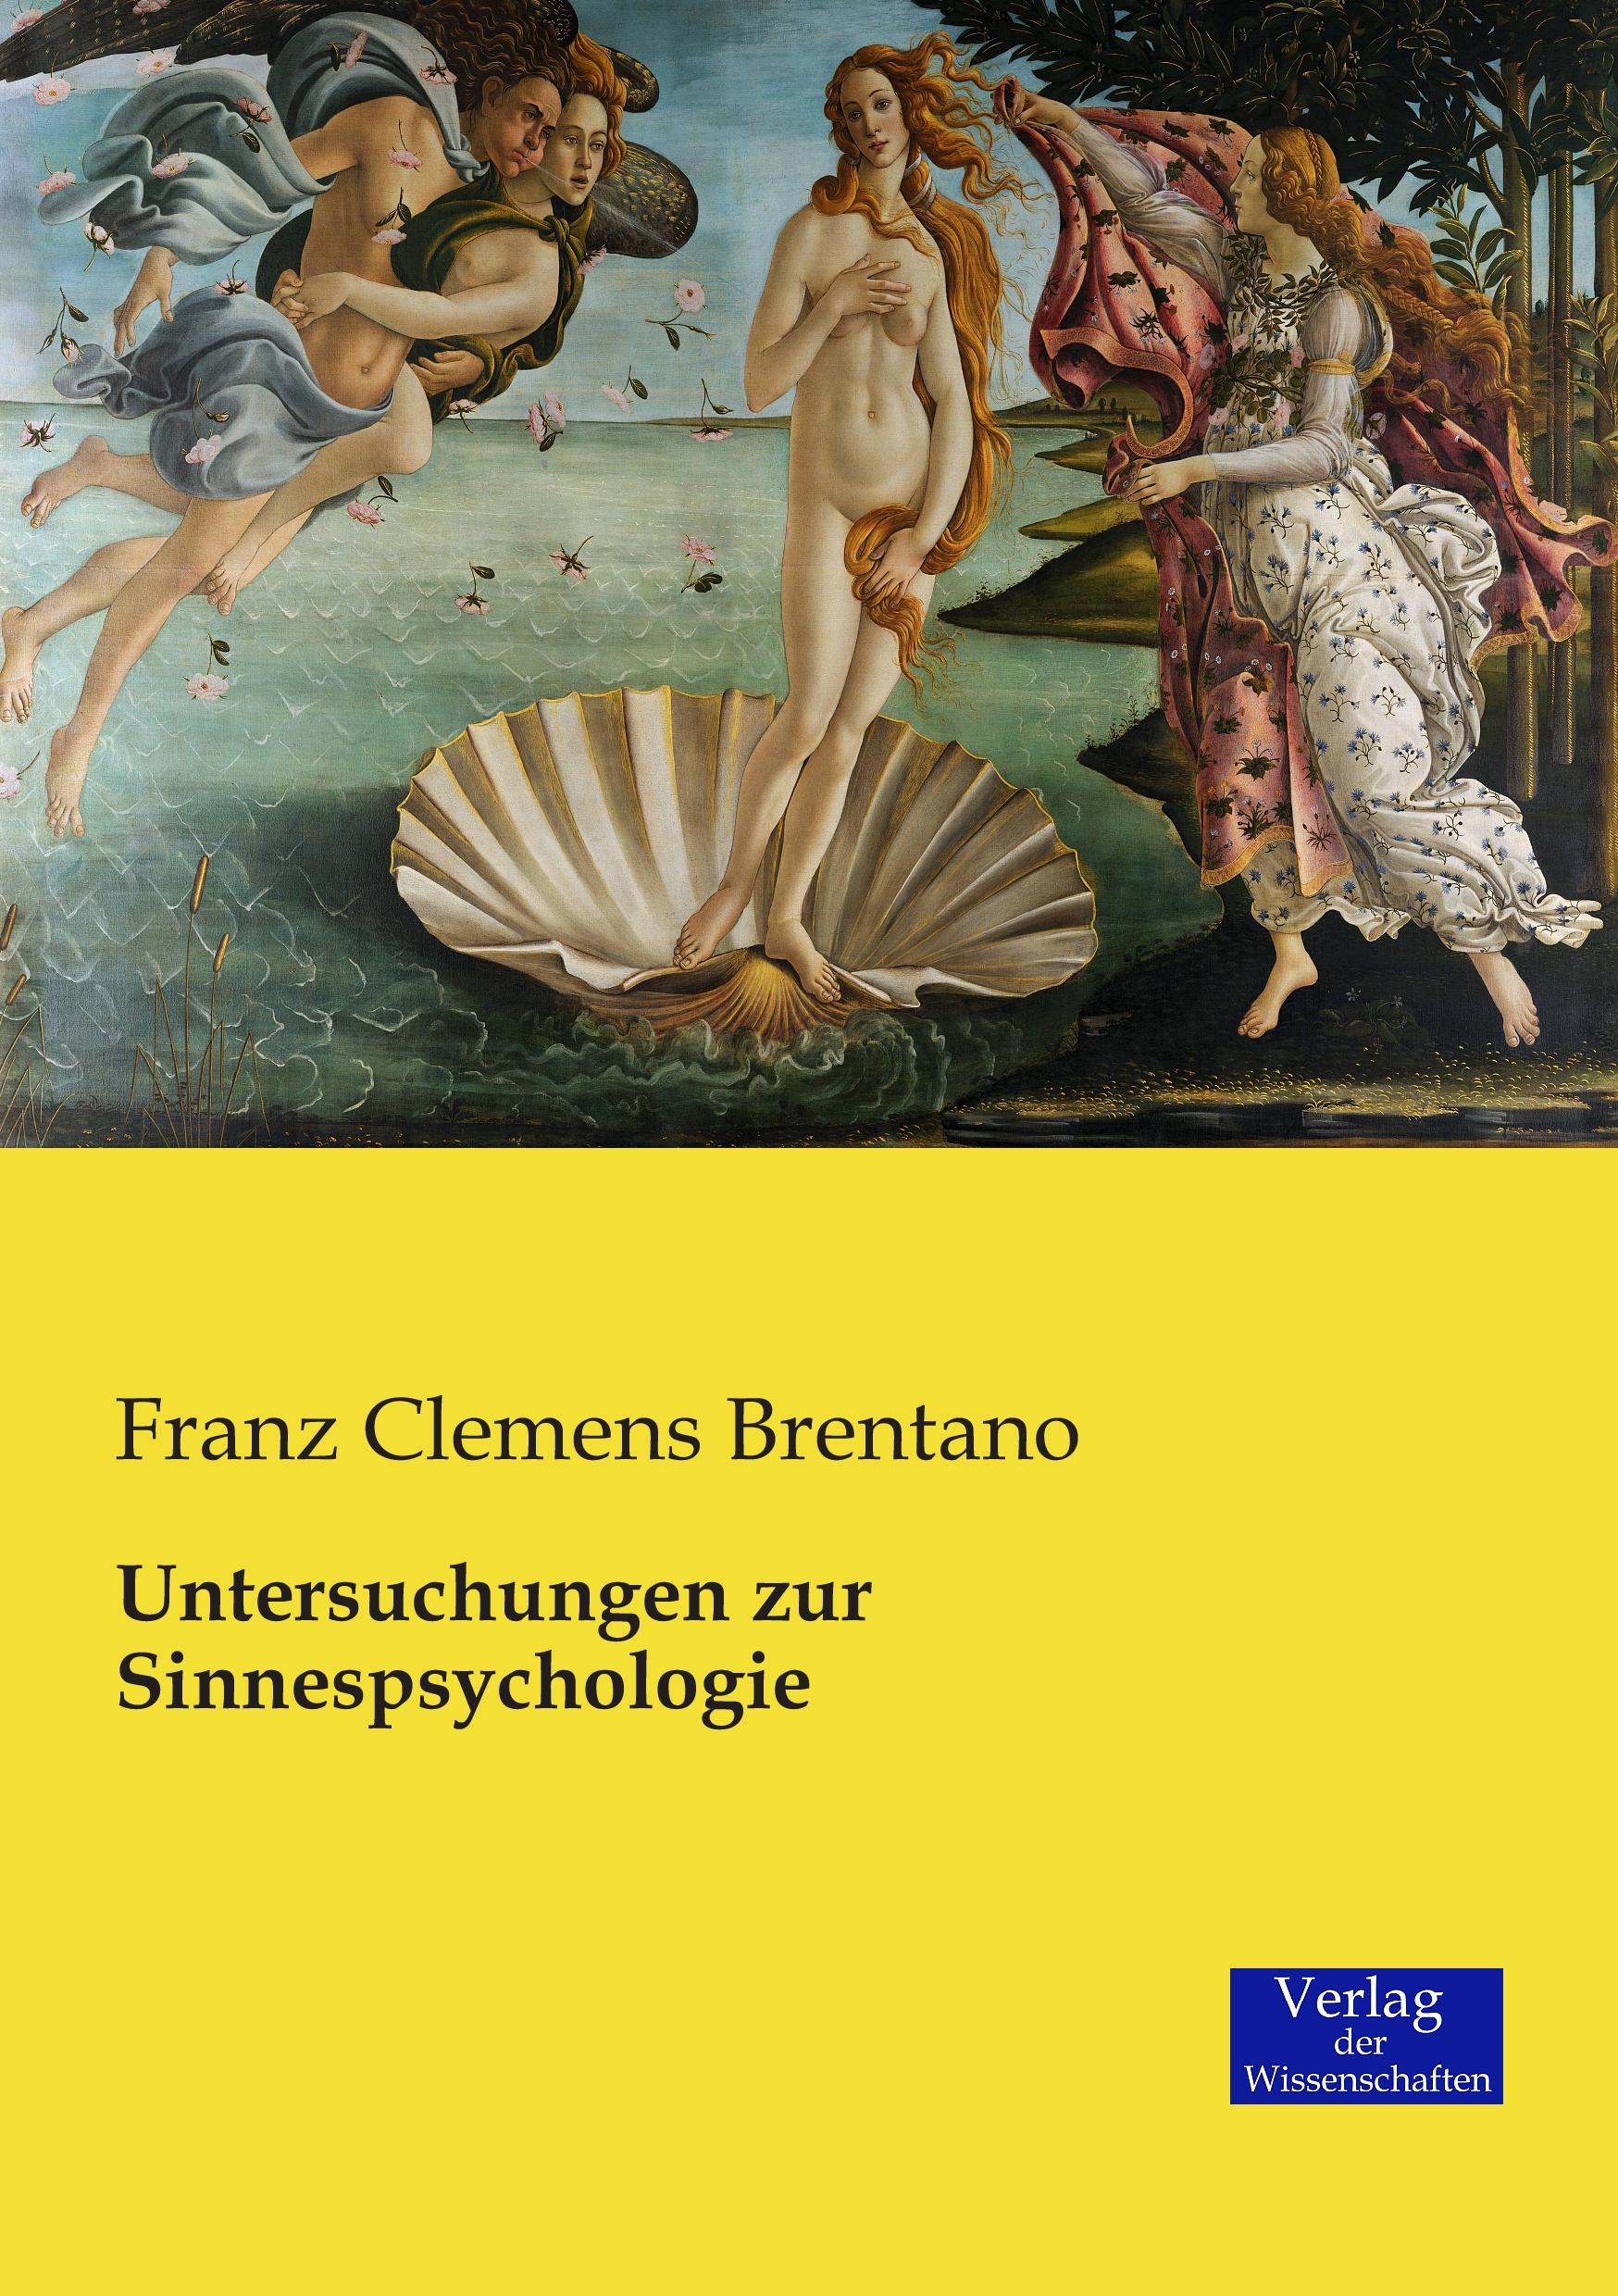 Untersuchungen zur Sinnespsychologie / Franz Clemens Brentano / Taschenbuch / Paperback / 176 S. / Deutsch / 2019 / Vero Verlag / EAN 9783957004321 - Brentano, Franz Clemens